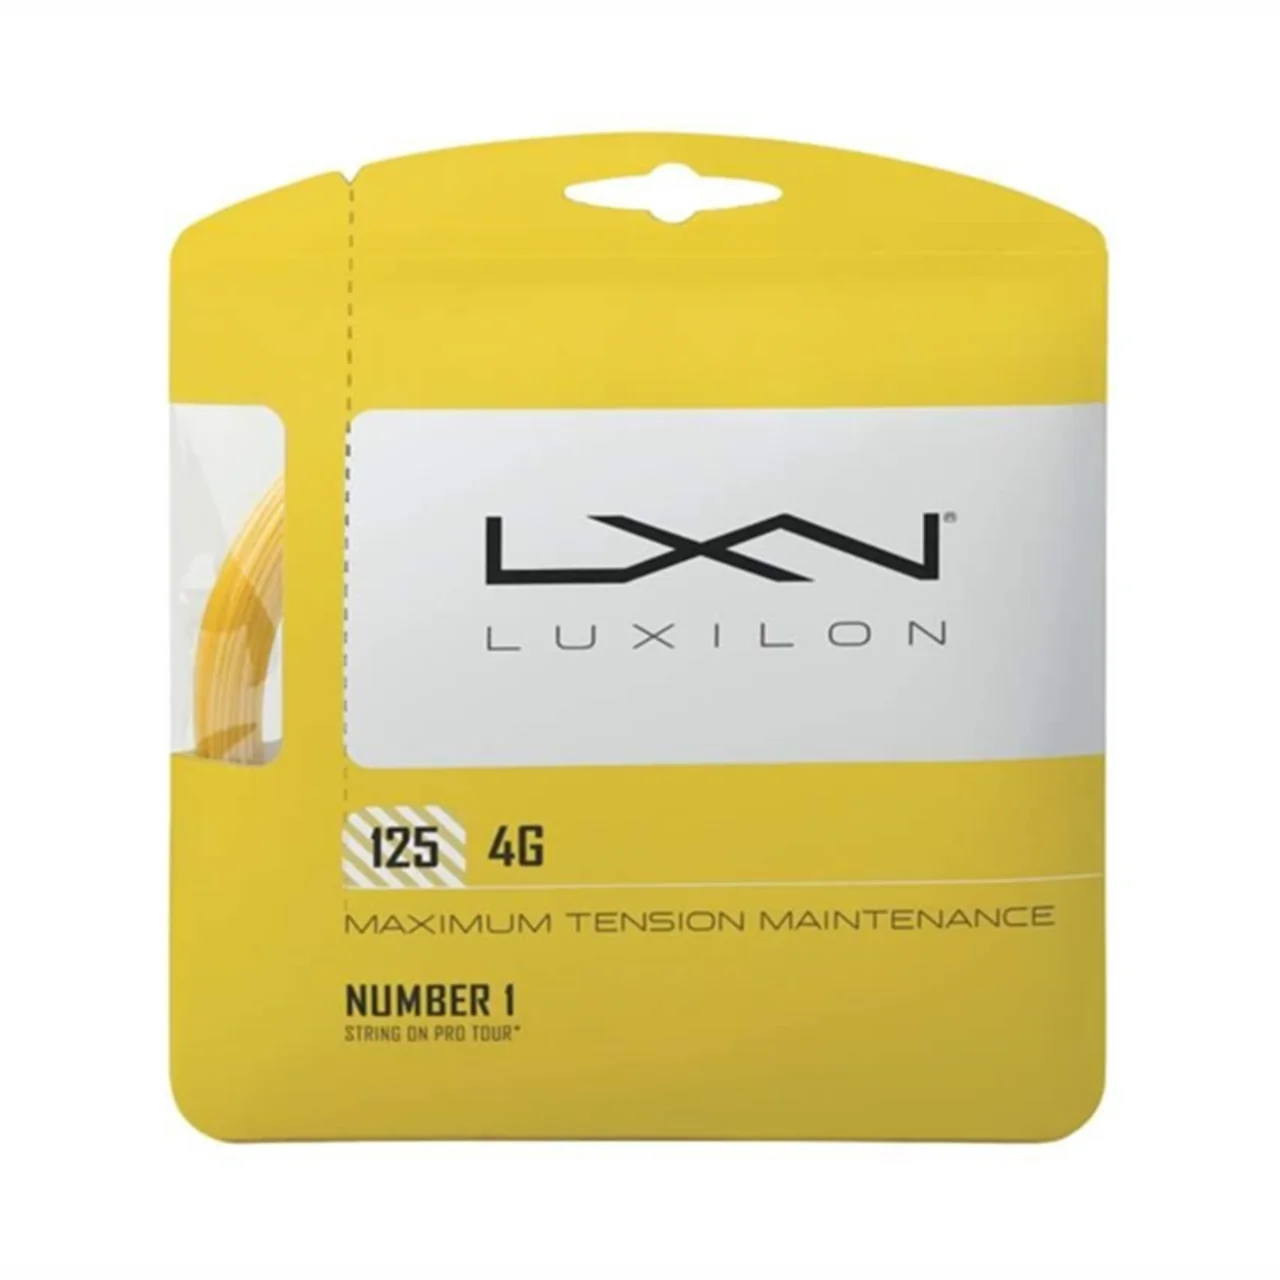 Luxilon 4G Gold Set